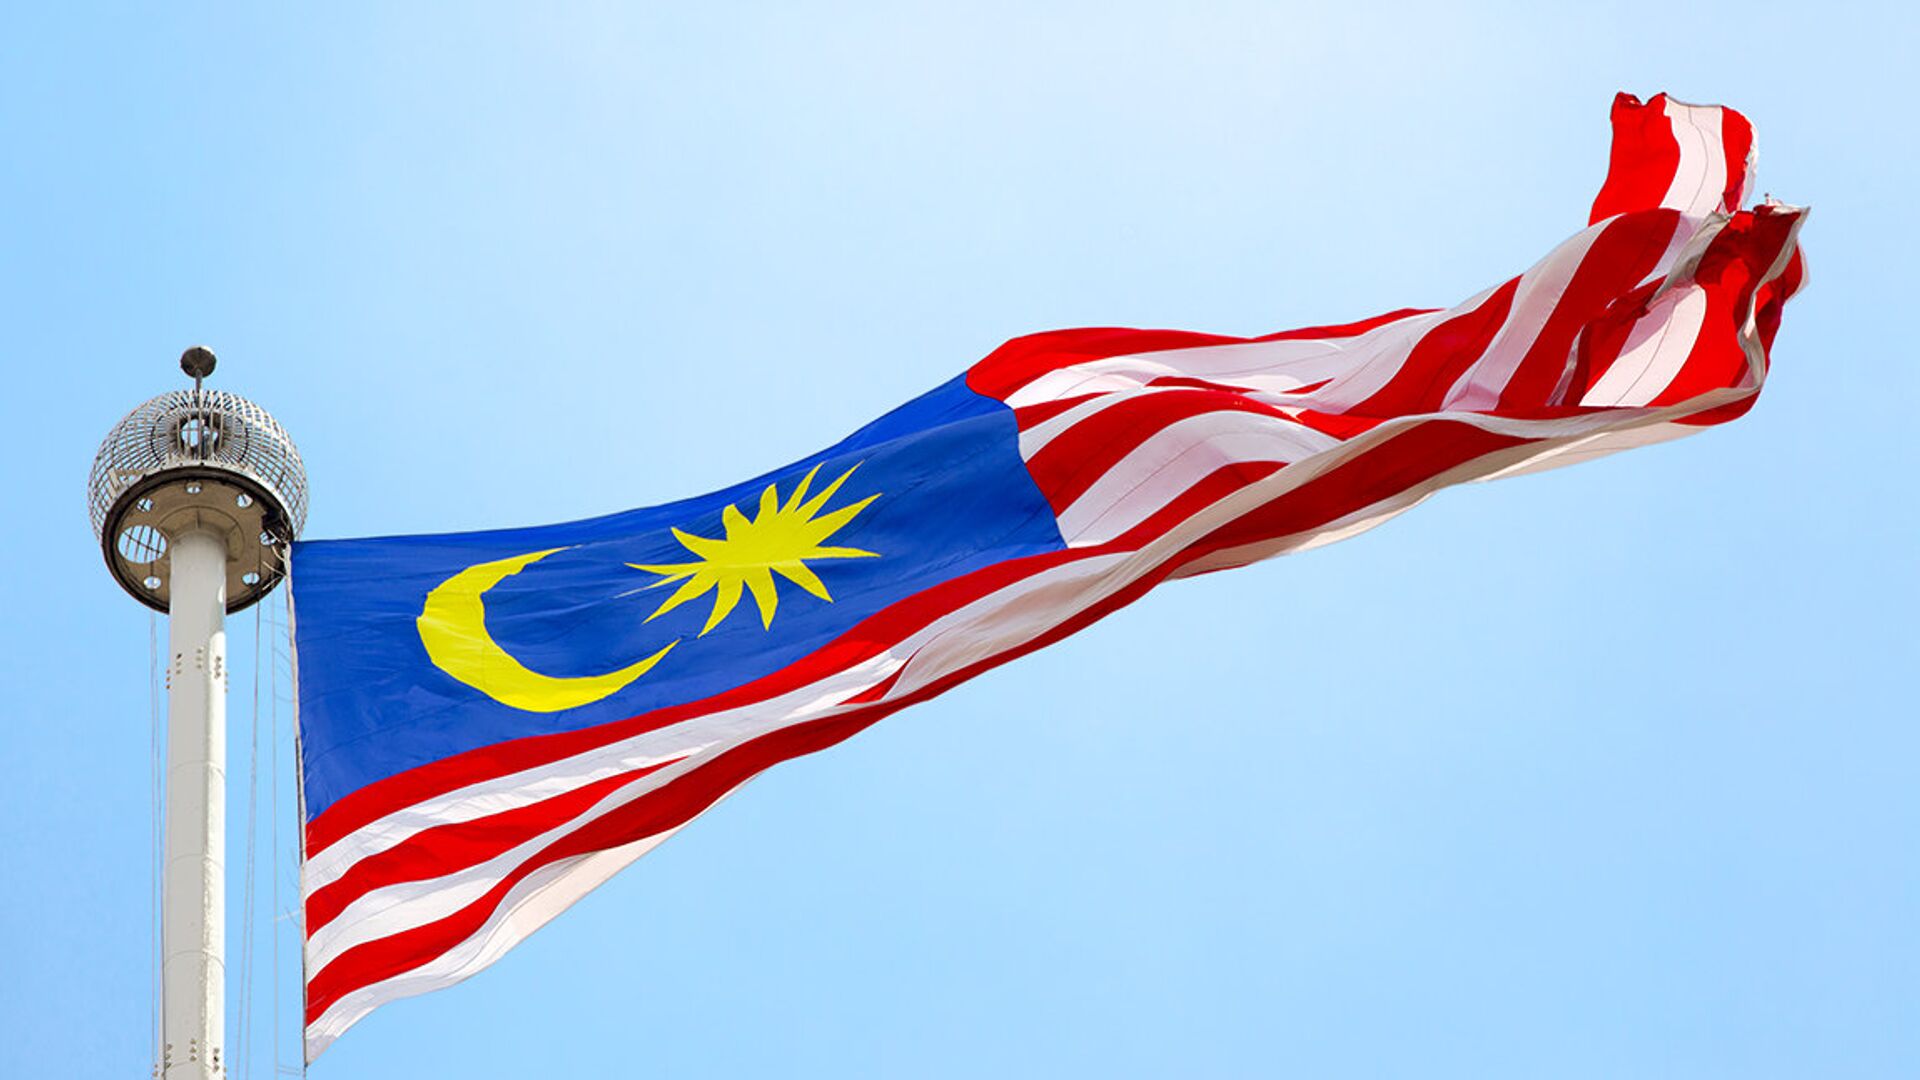 La bandera de Malasia - Sputnik Mundo, 1920, 16.08.2021